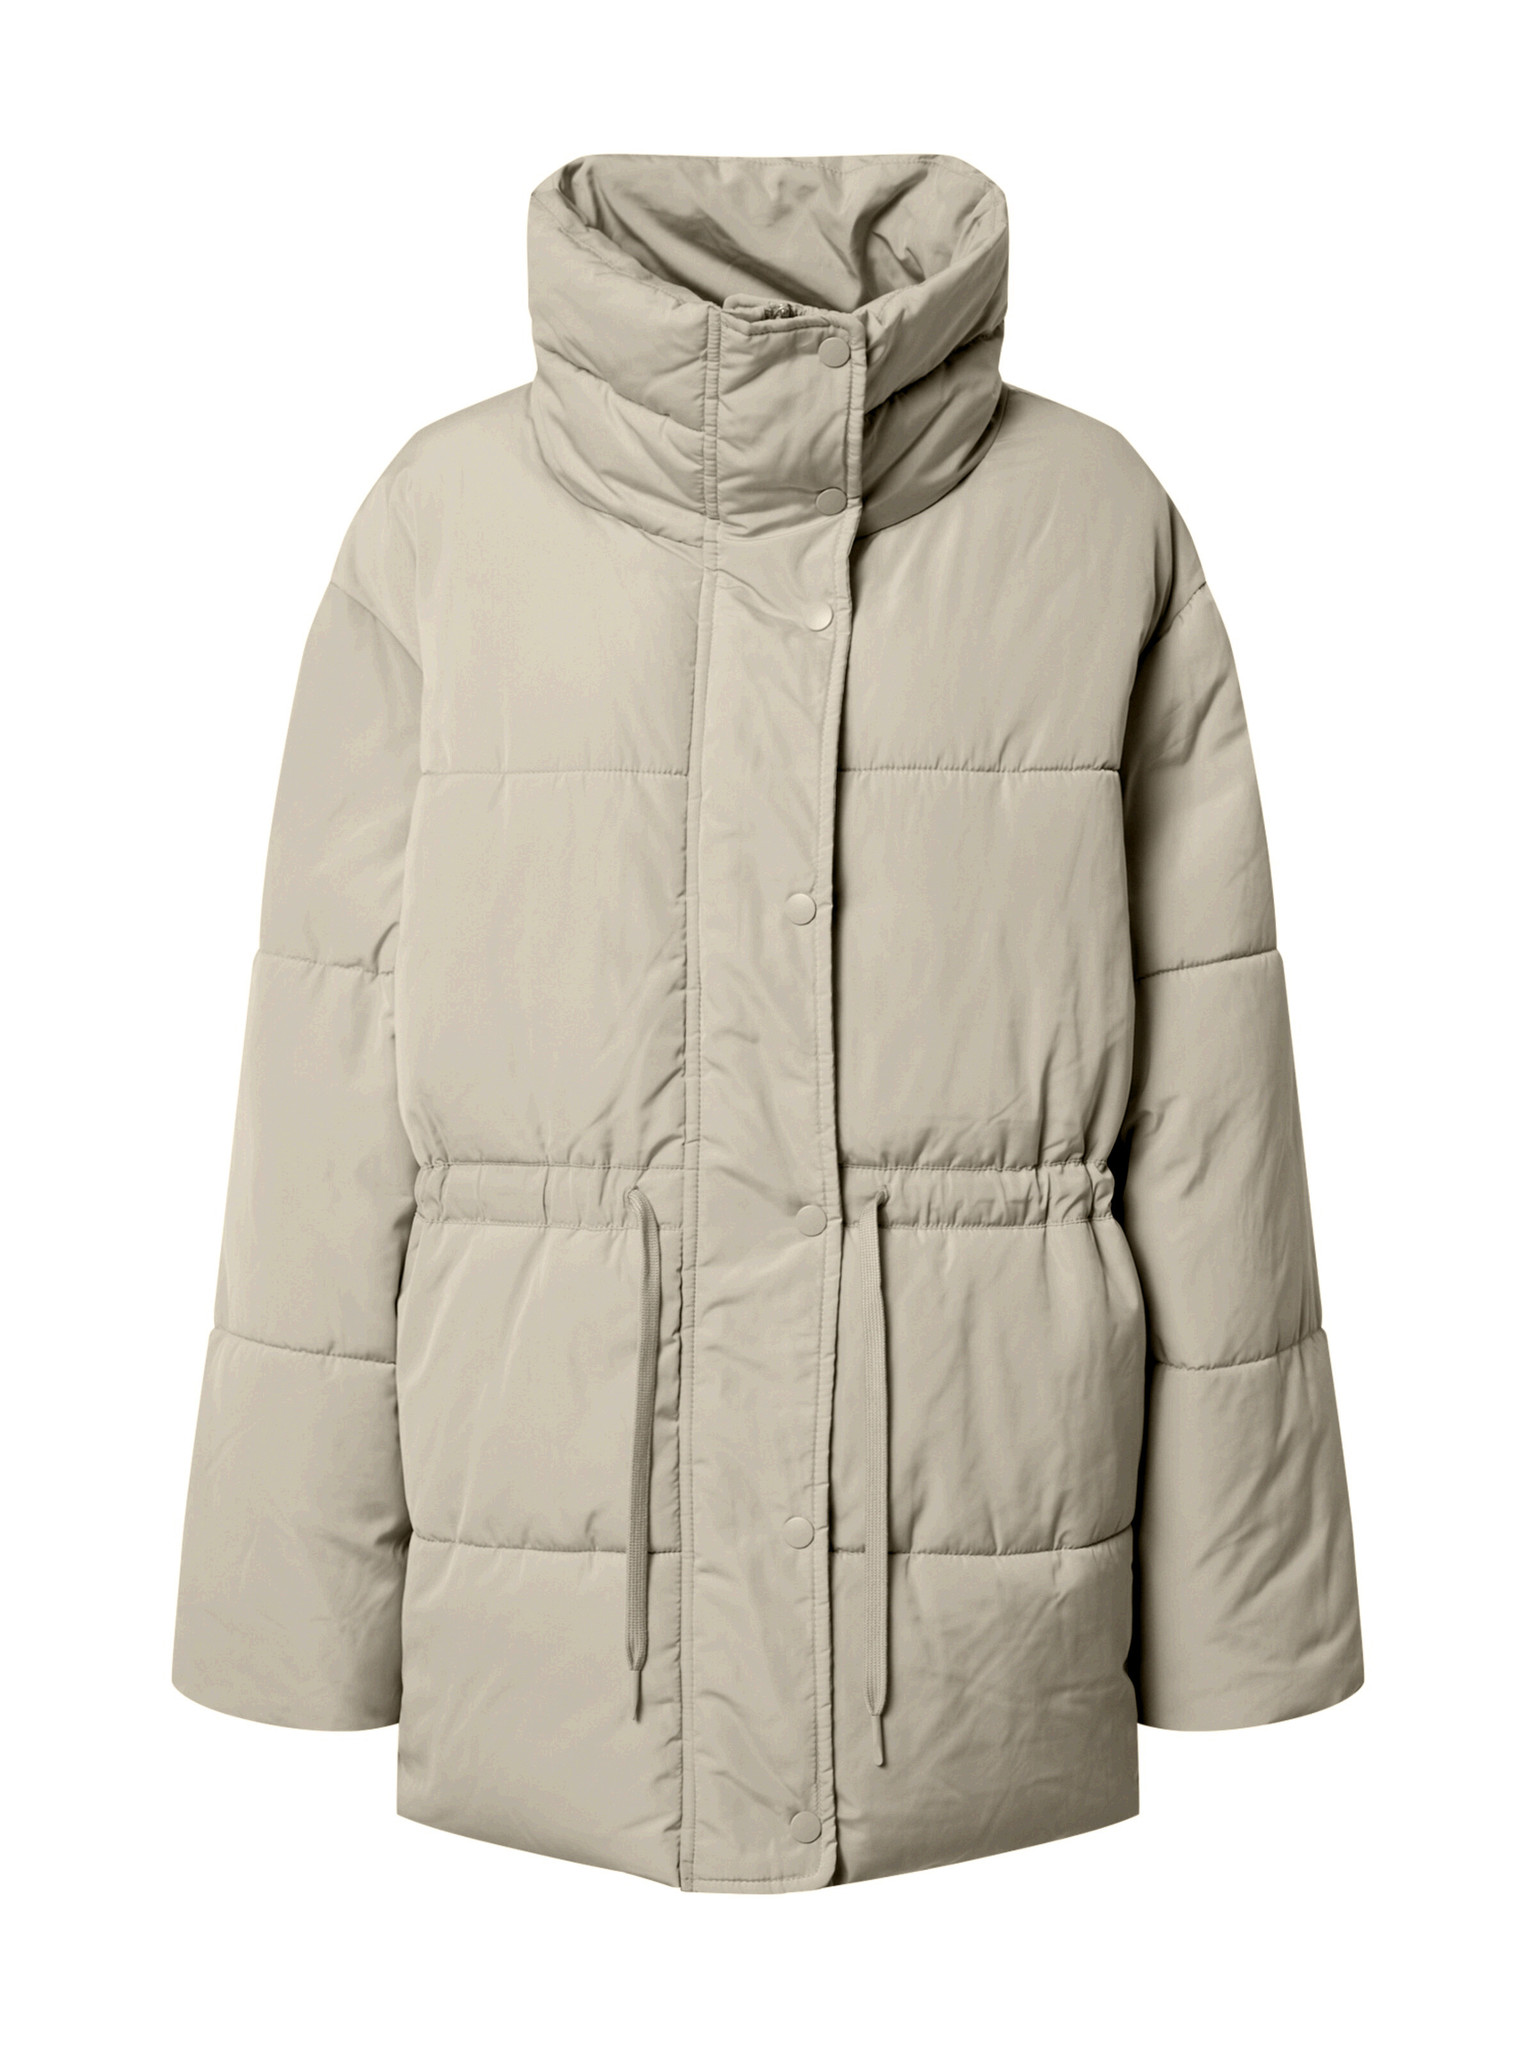 Winter jacket Kea